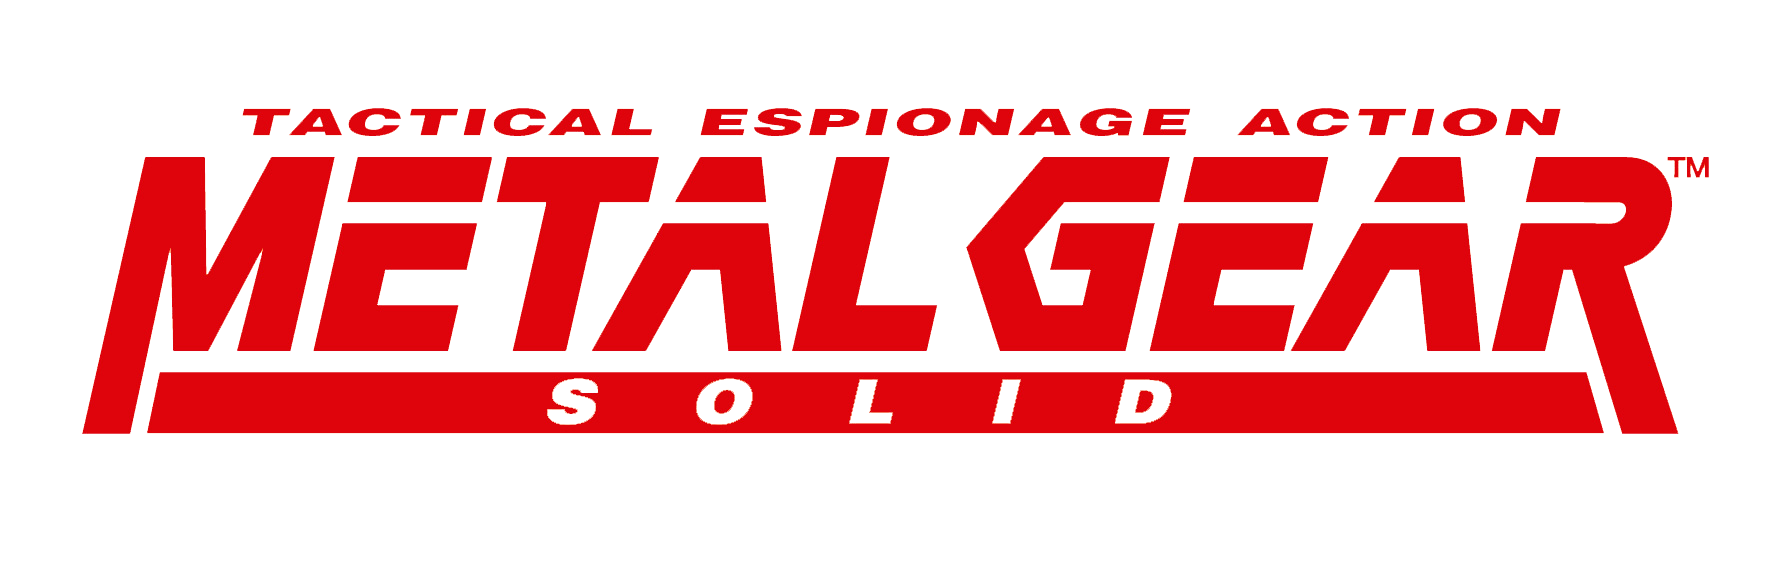 Metal Gear Logo Free PNG Image